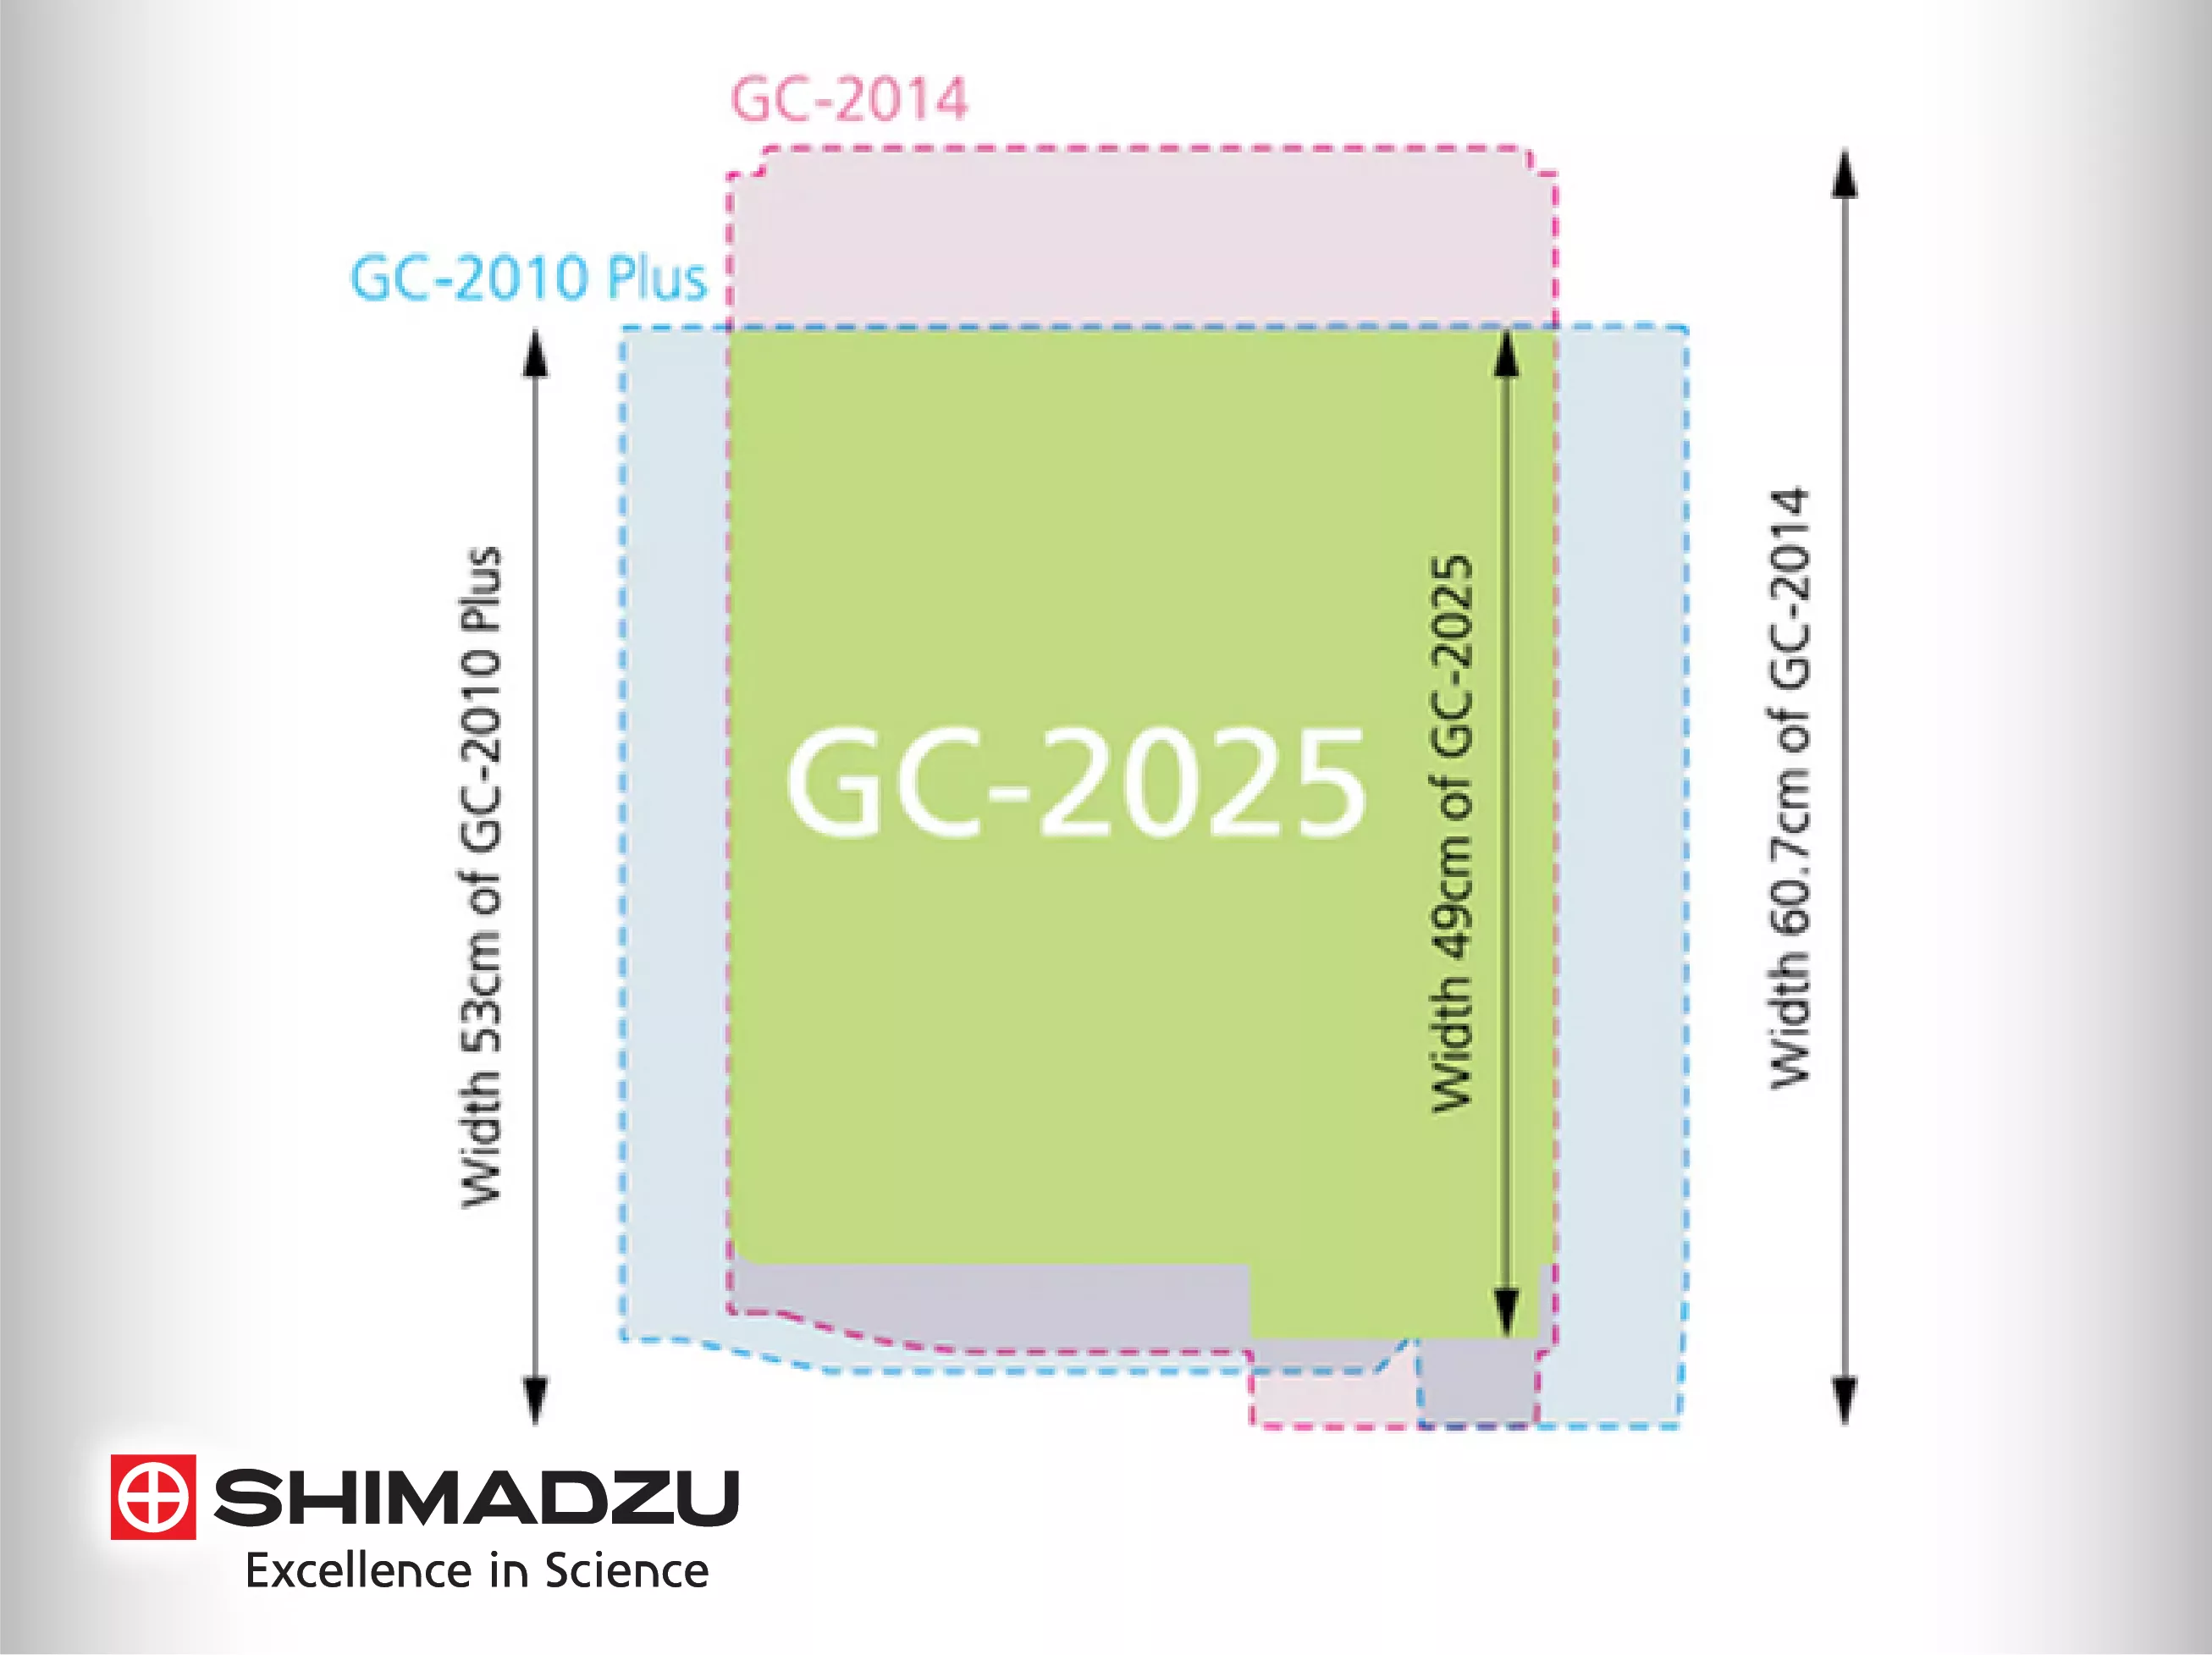 Shimadzu GC-2025